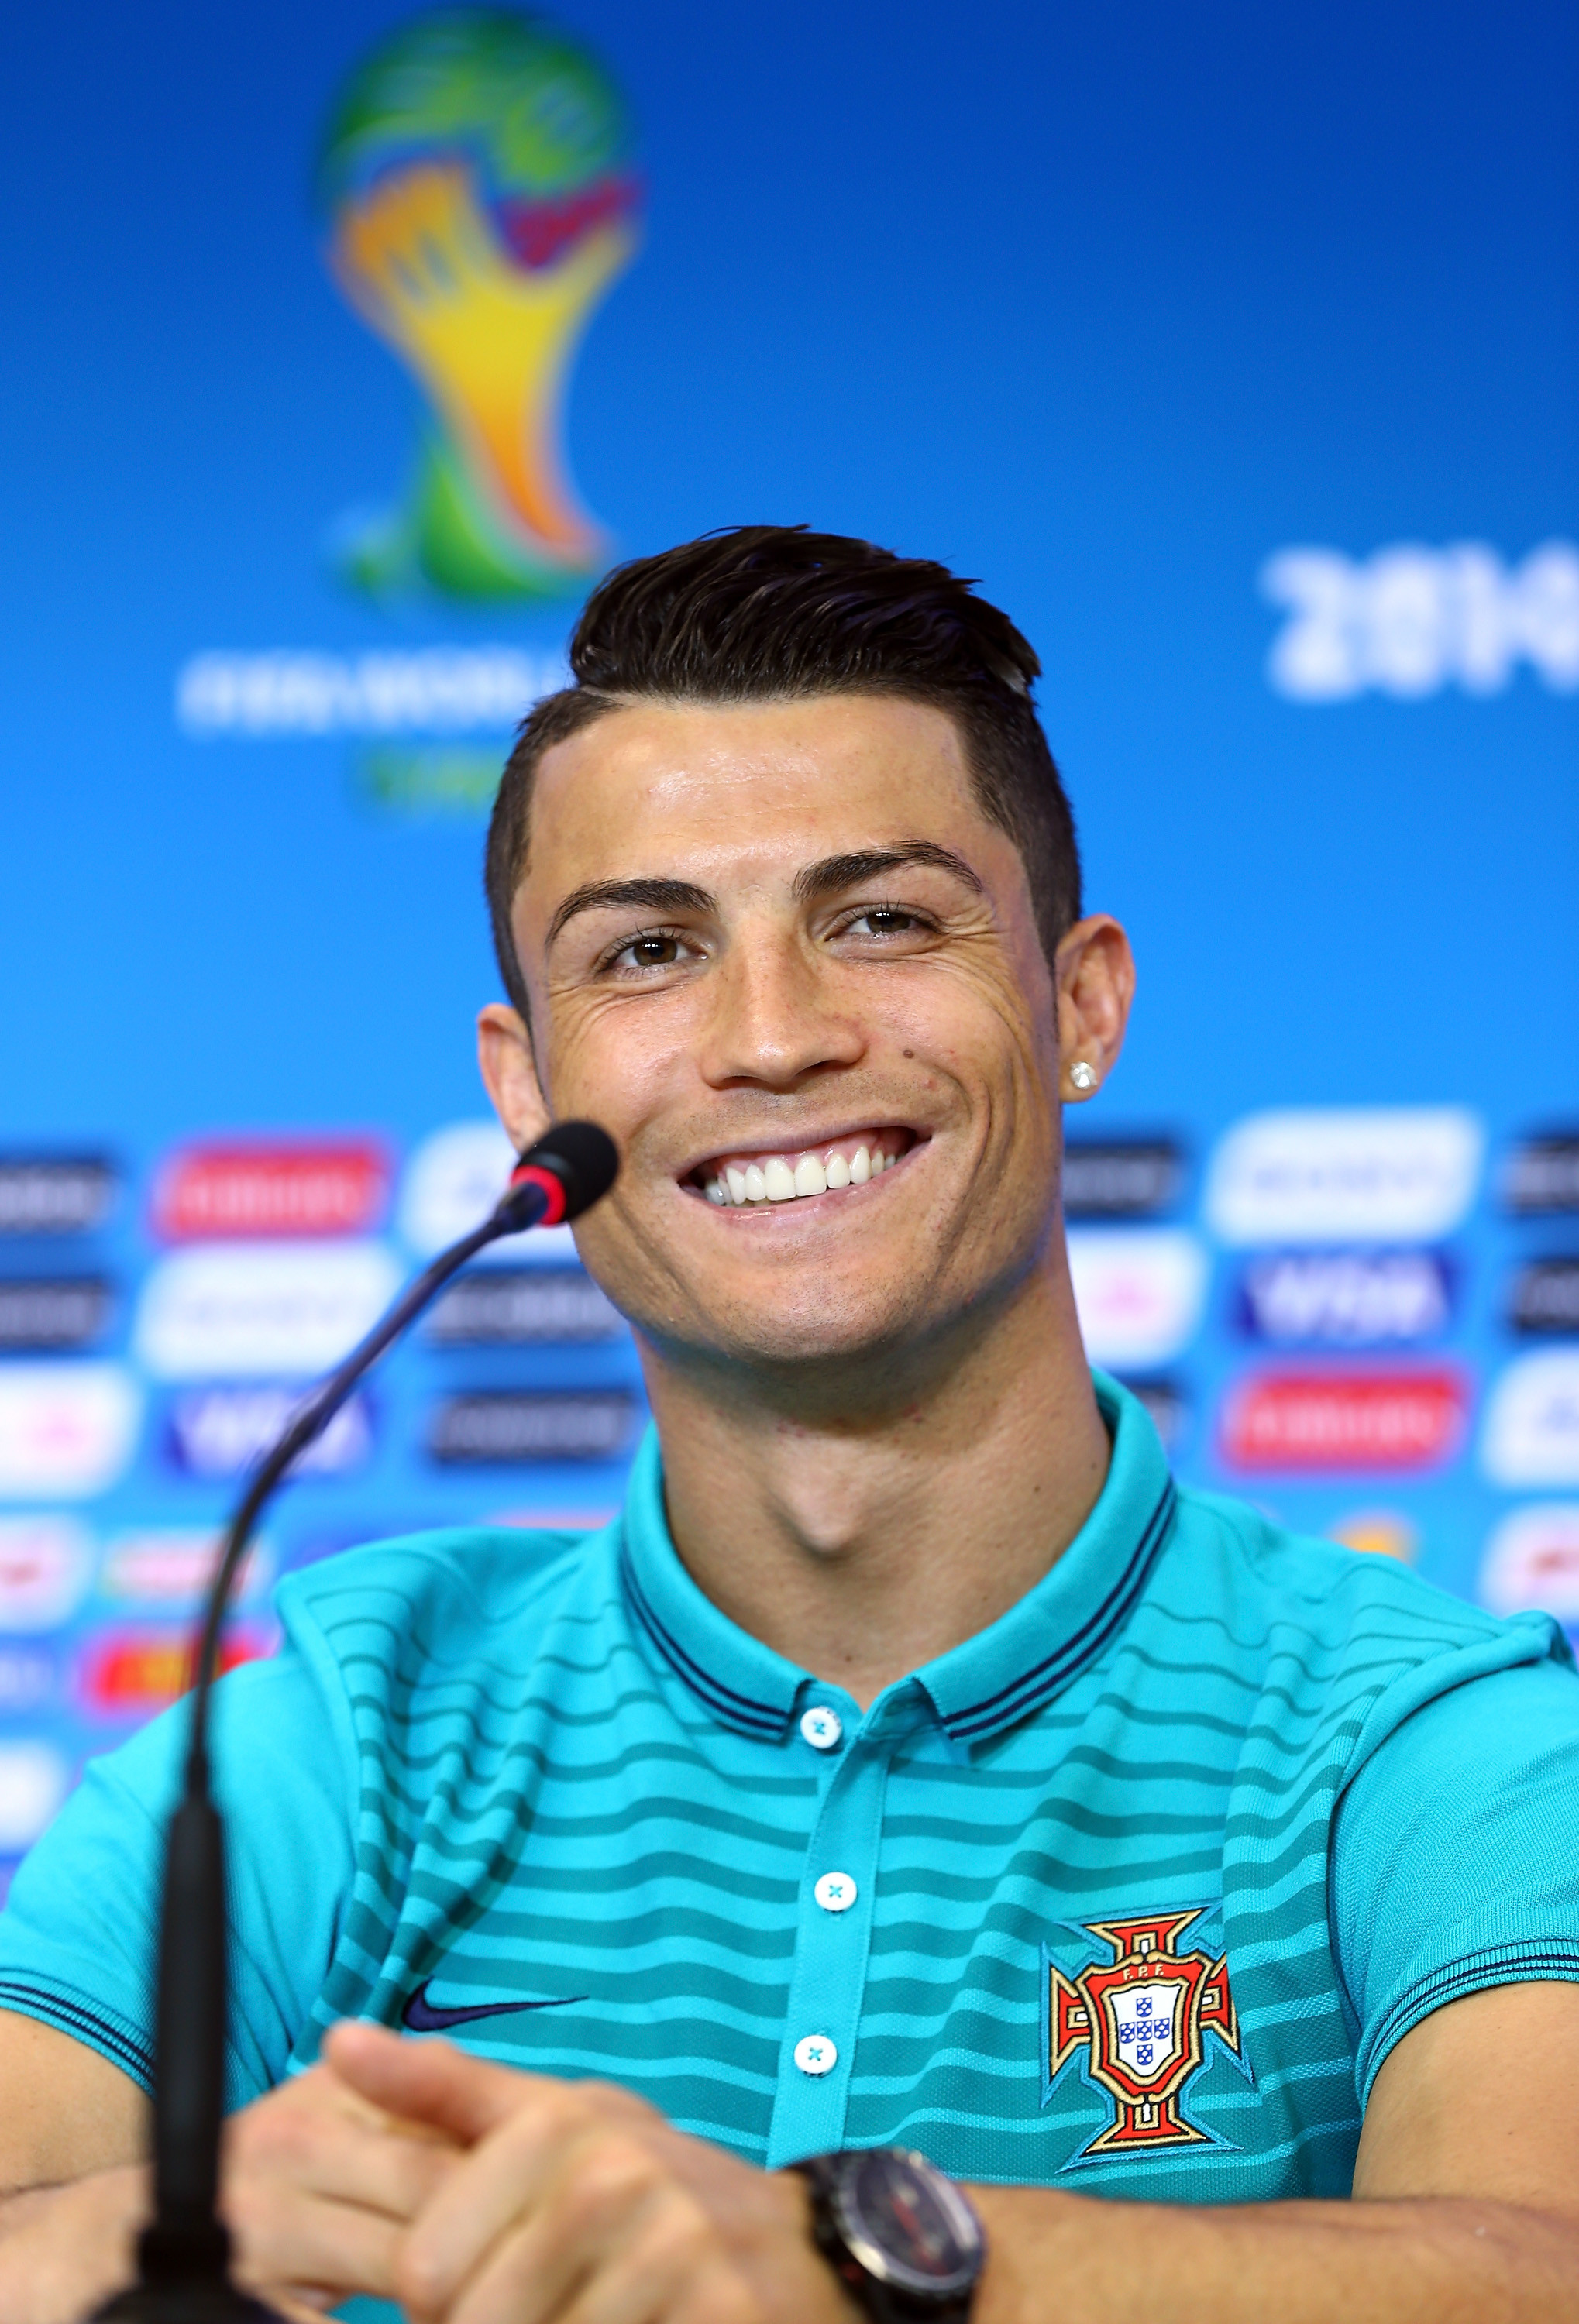 Best 20 Ronaldo news ideas on Pinterest Cr7 news, Ronaldo goals and Gold football cleats